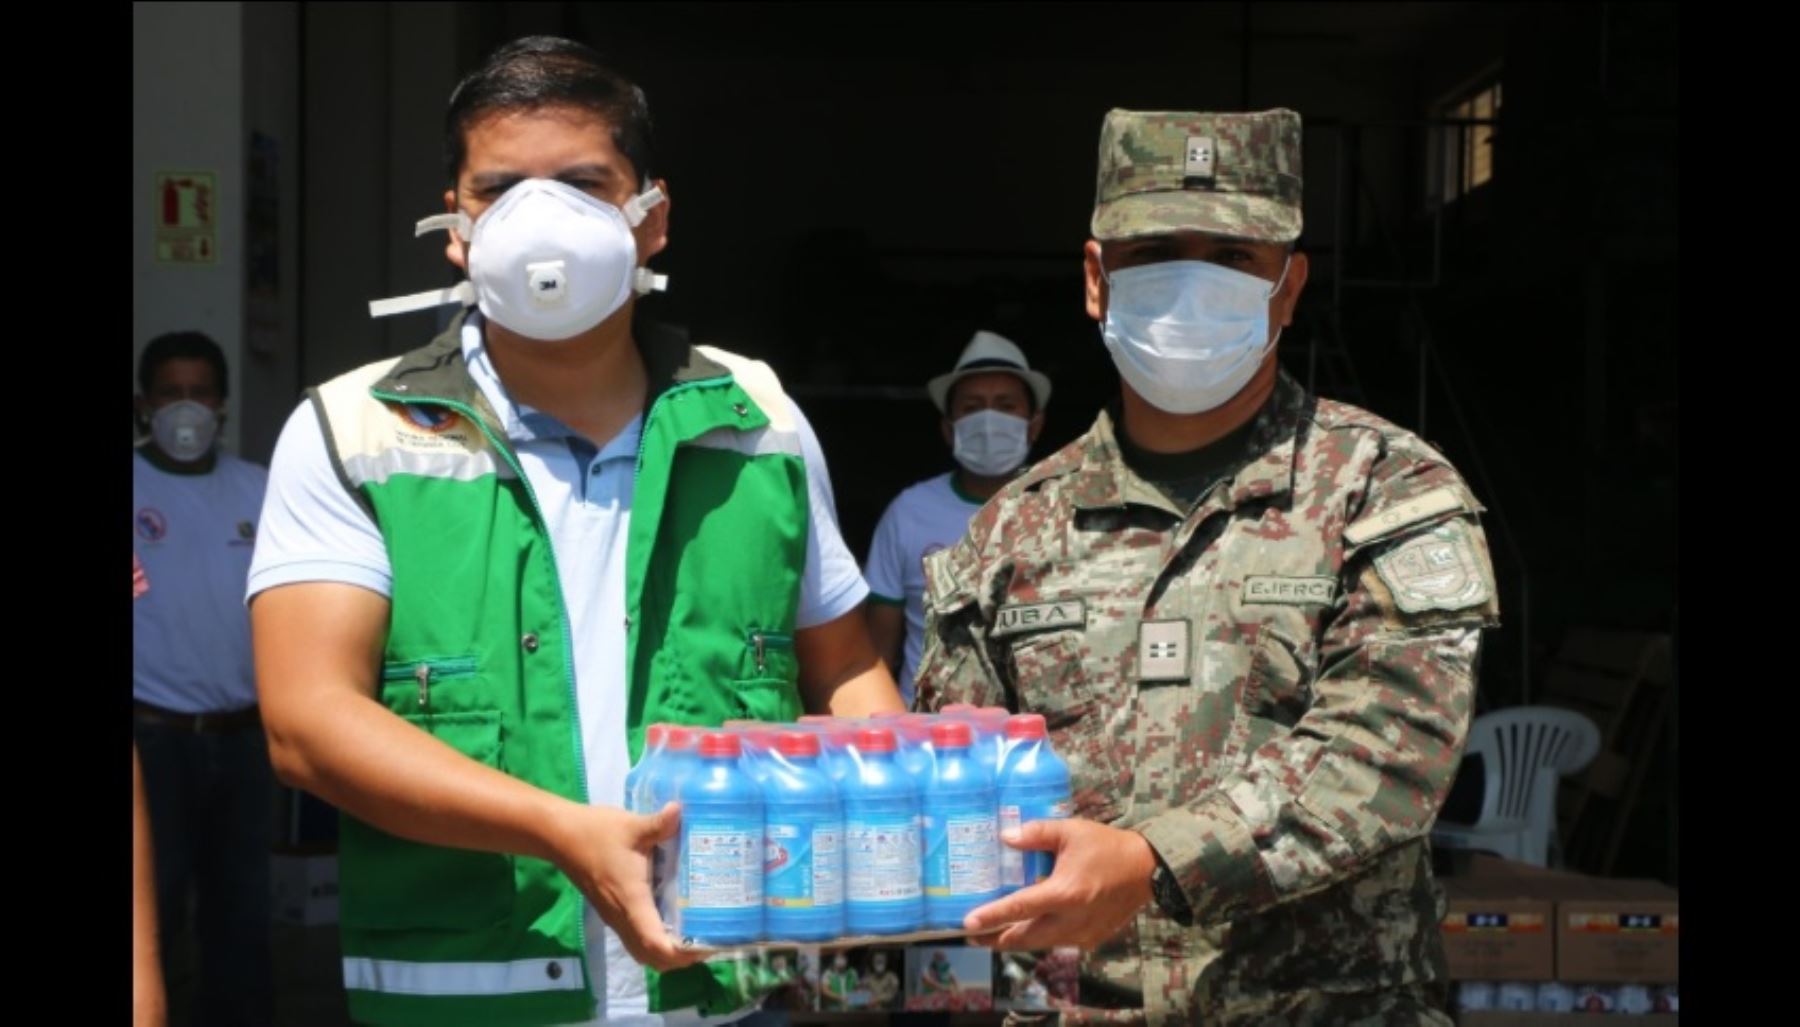 La Base del Ejército de Huaral recibió frazadas, agua embotellada y productos de desinfección, con la finalidad de que sean repartidos a los reservistas que cumplen labor de patrullaje y vigilancia en esta provincia, en el marco del estado de emergencia dispuesto por el Ejecutivo para evitar la propagación del coronavirus covid-19, informó el Gobierno Regional de Lima.